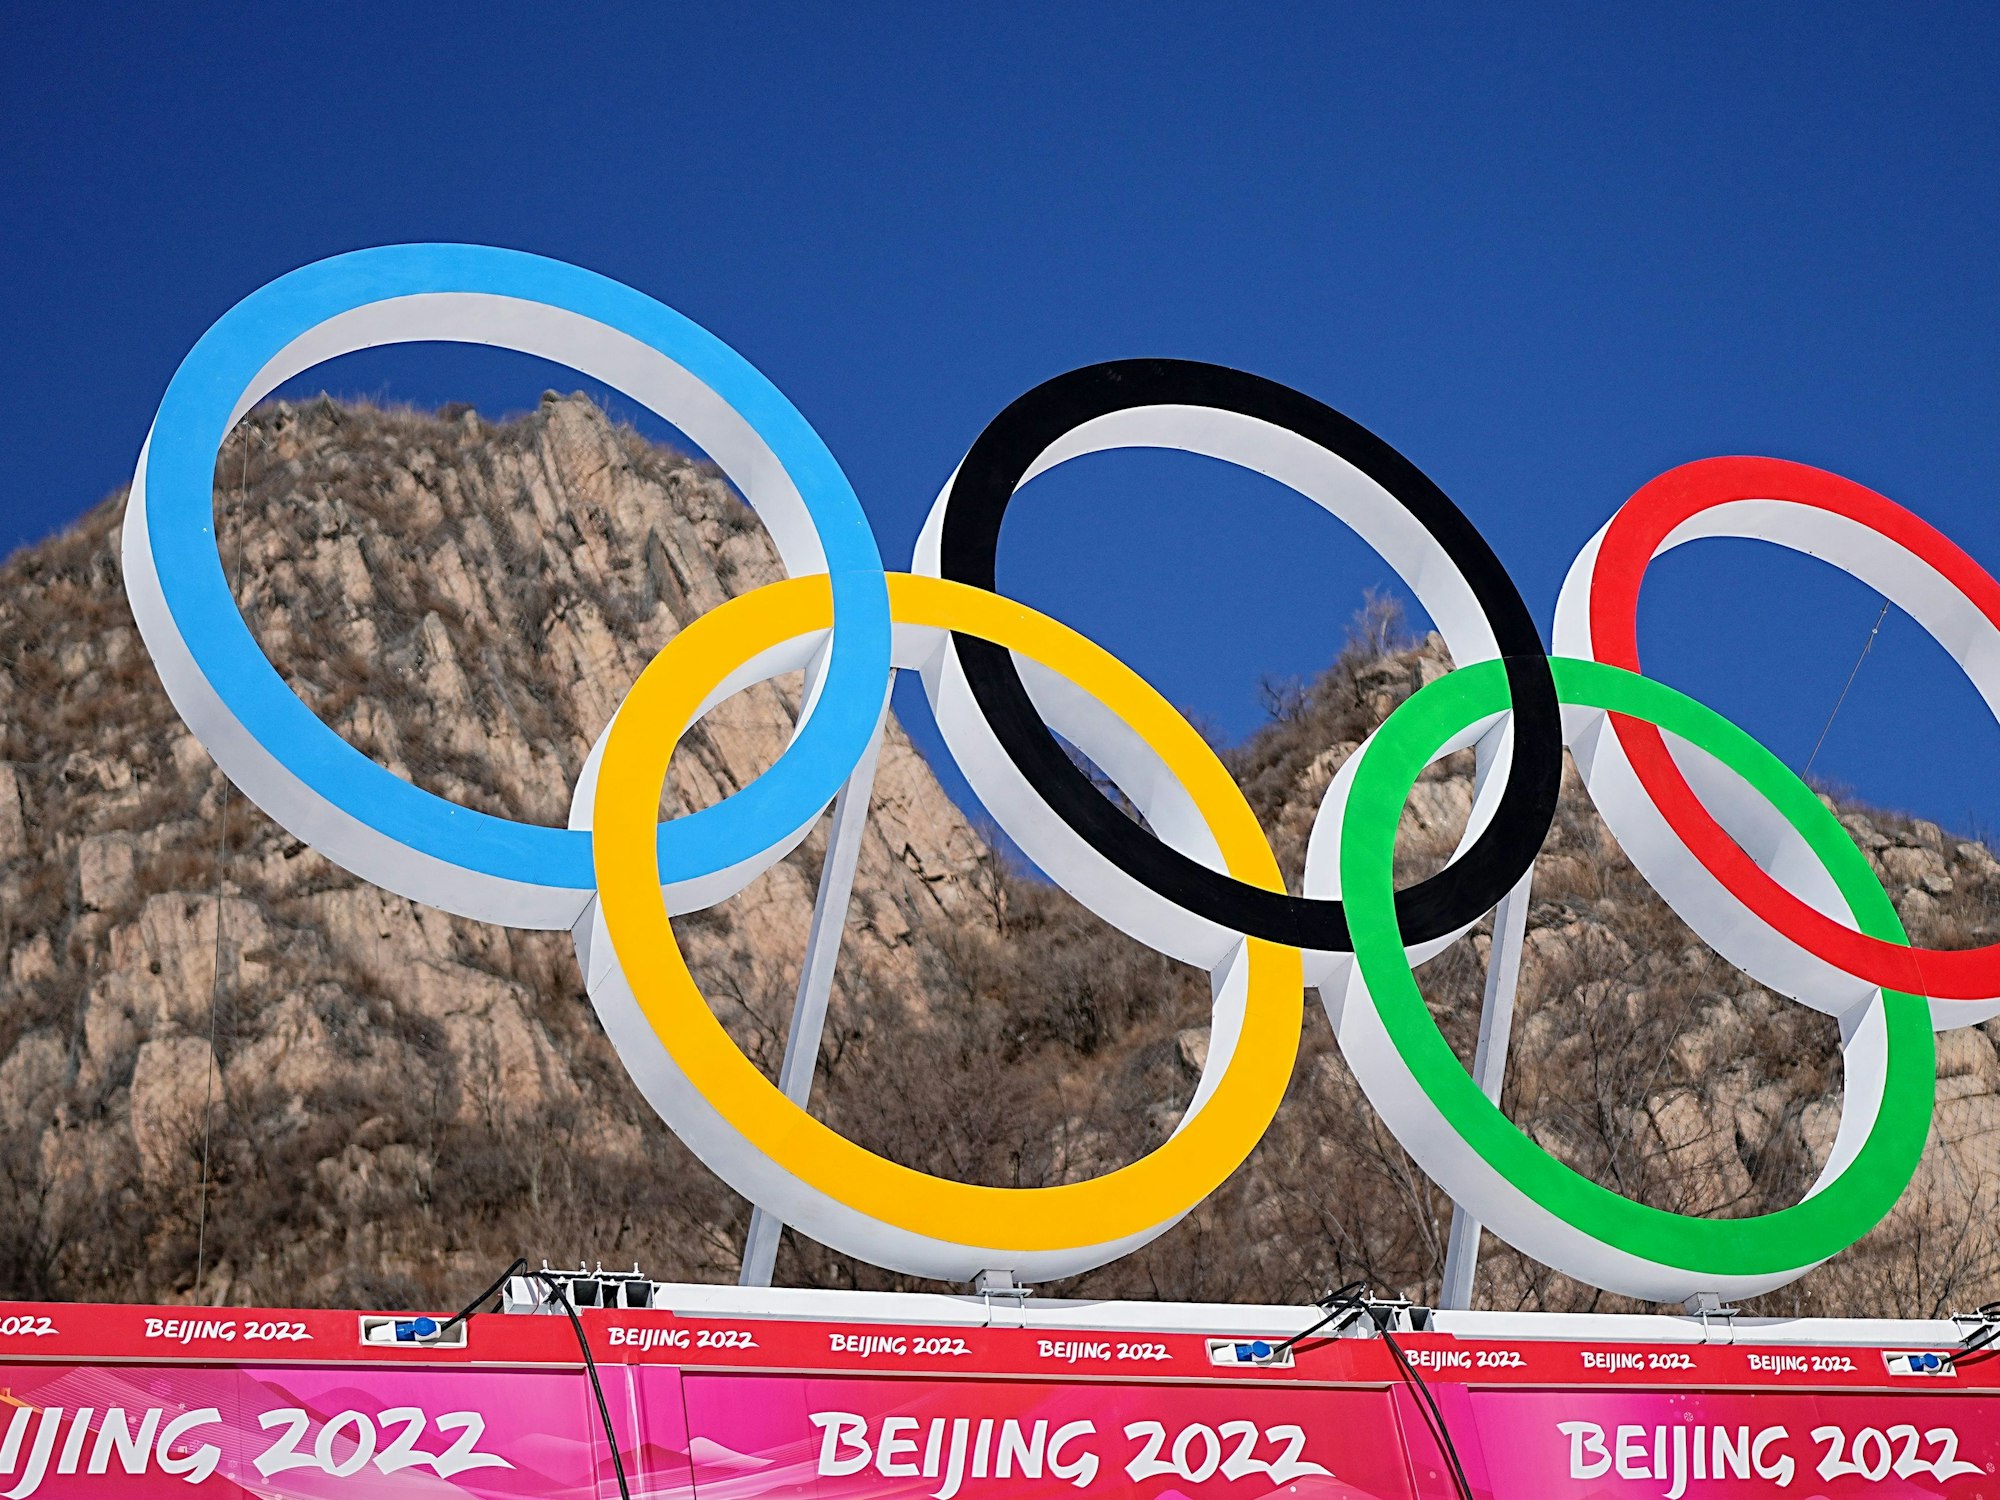 Im Zielbereich der Ski-alpin-Strecke im Nationalen Ski-Alpin-Zentrum in Yanqing, China, sind die olympischen Ringe angebracht. Foto vom 2. Februar 2022.